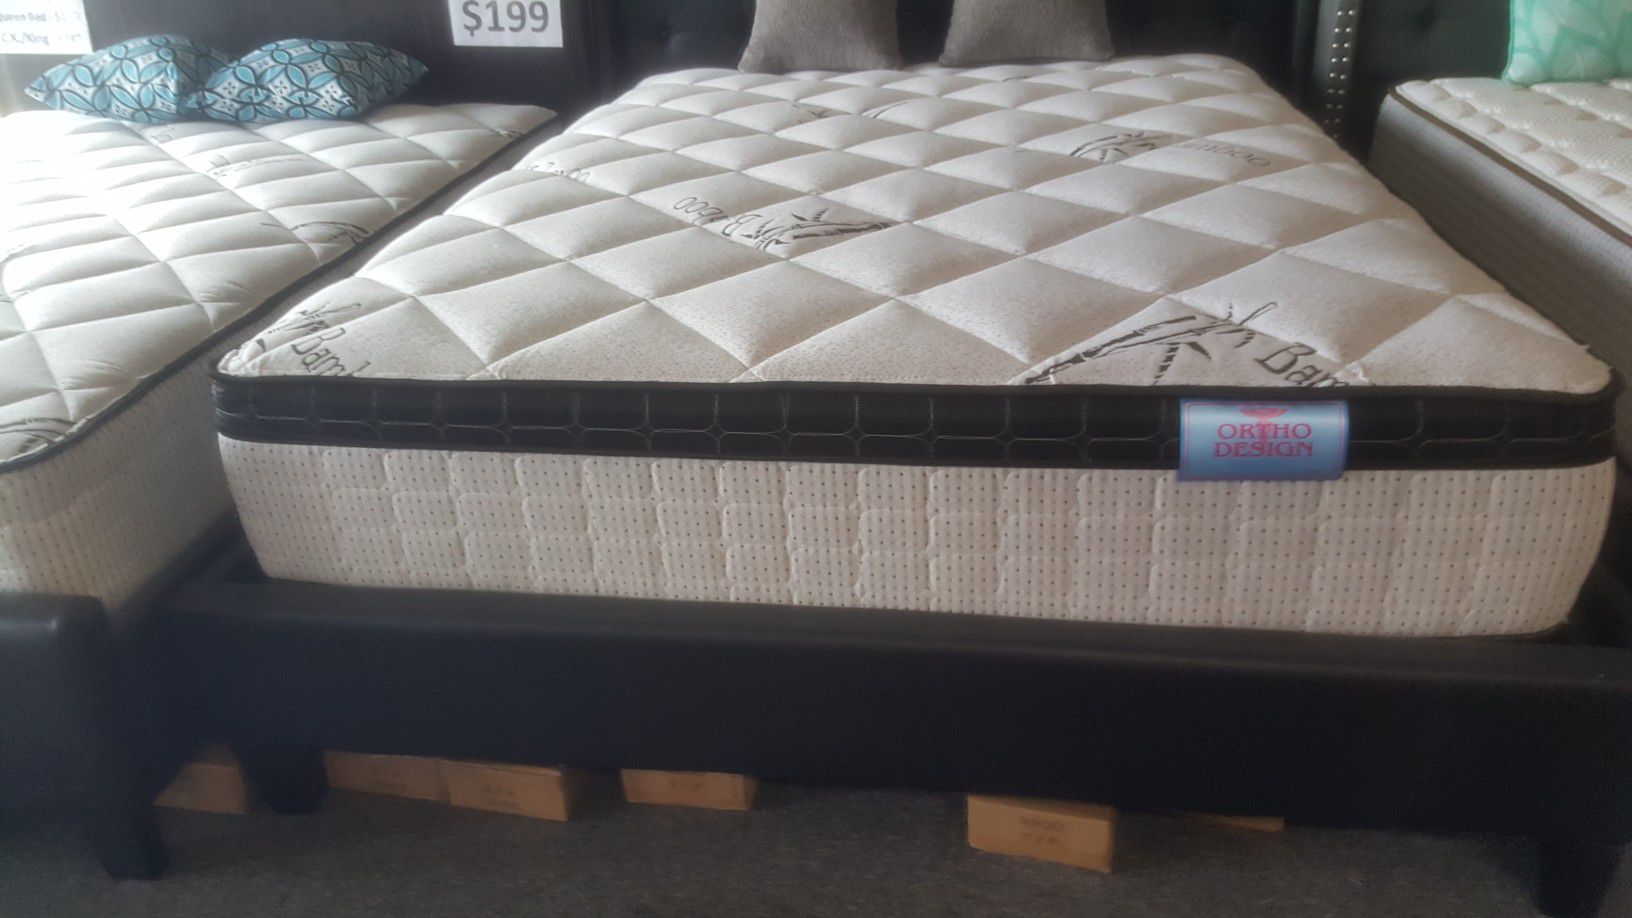 Brand new 11" thick full pillowtop mattress